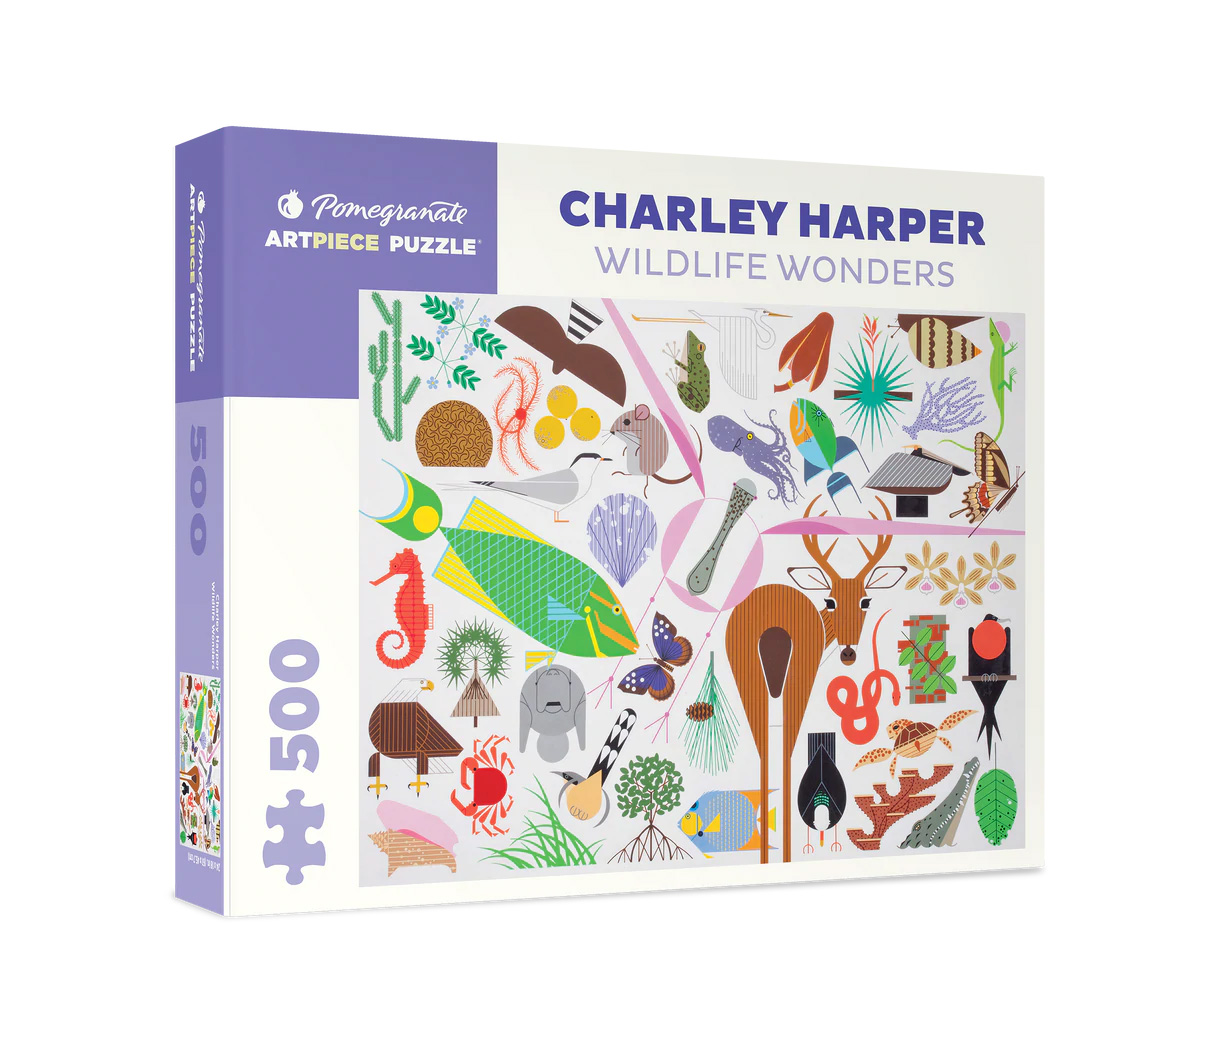 Wildlife Wonders by Charley Harper